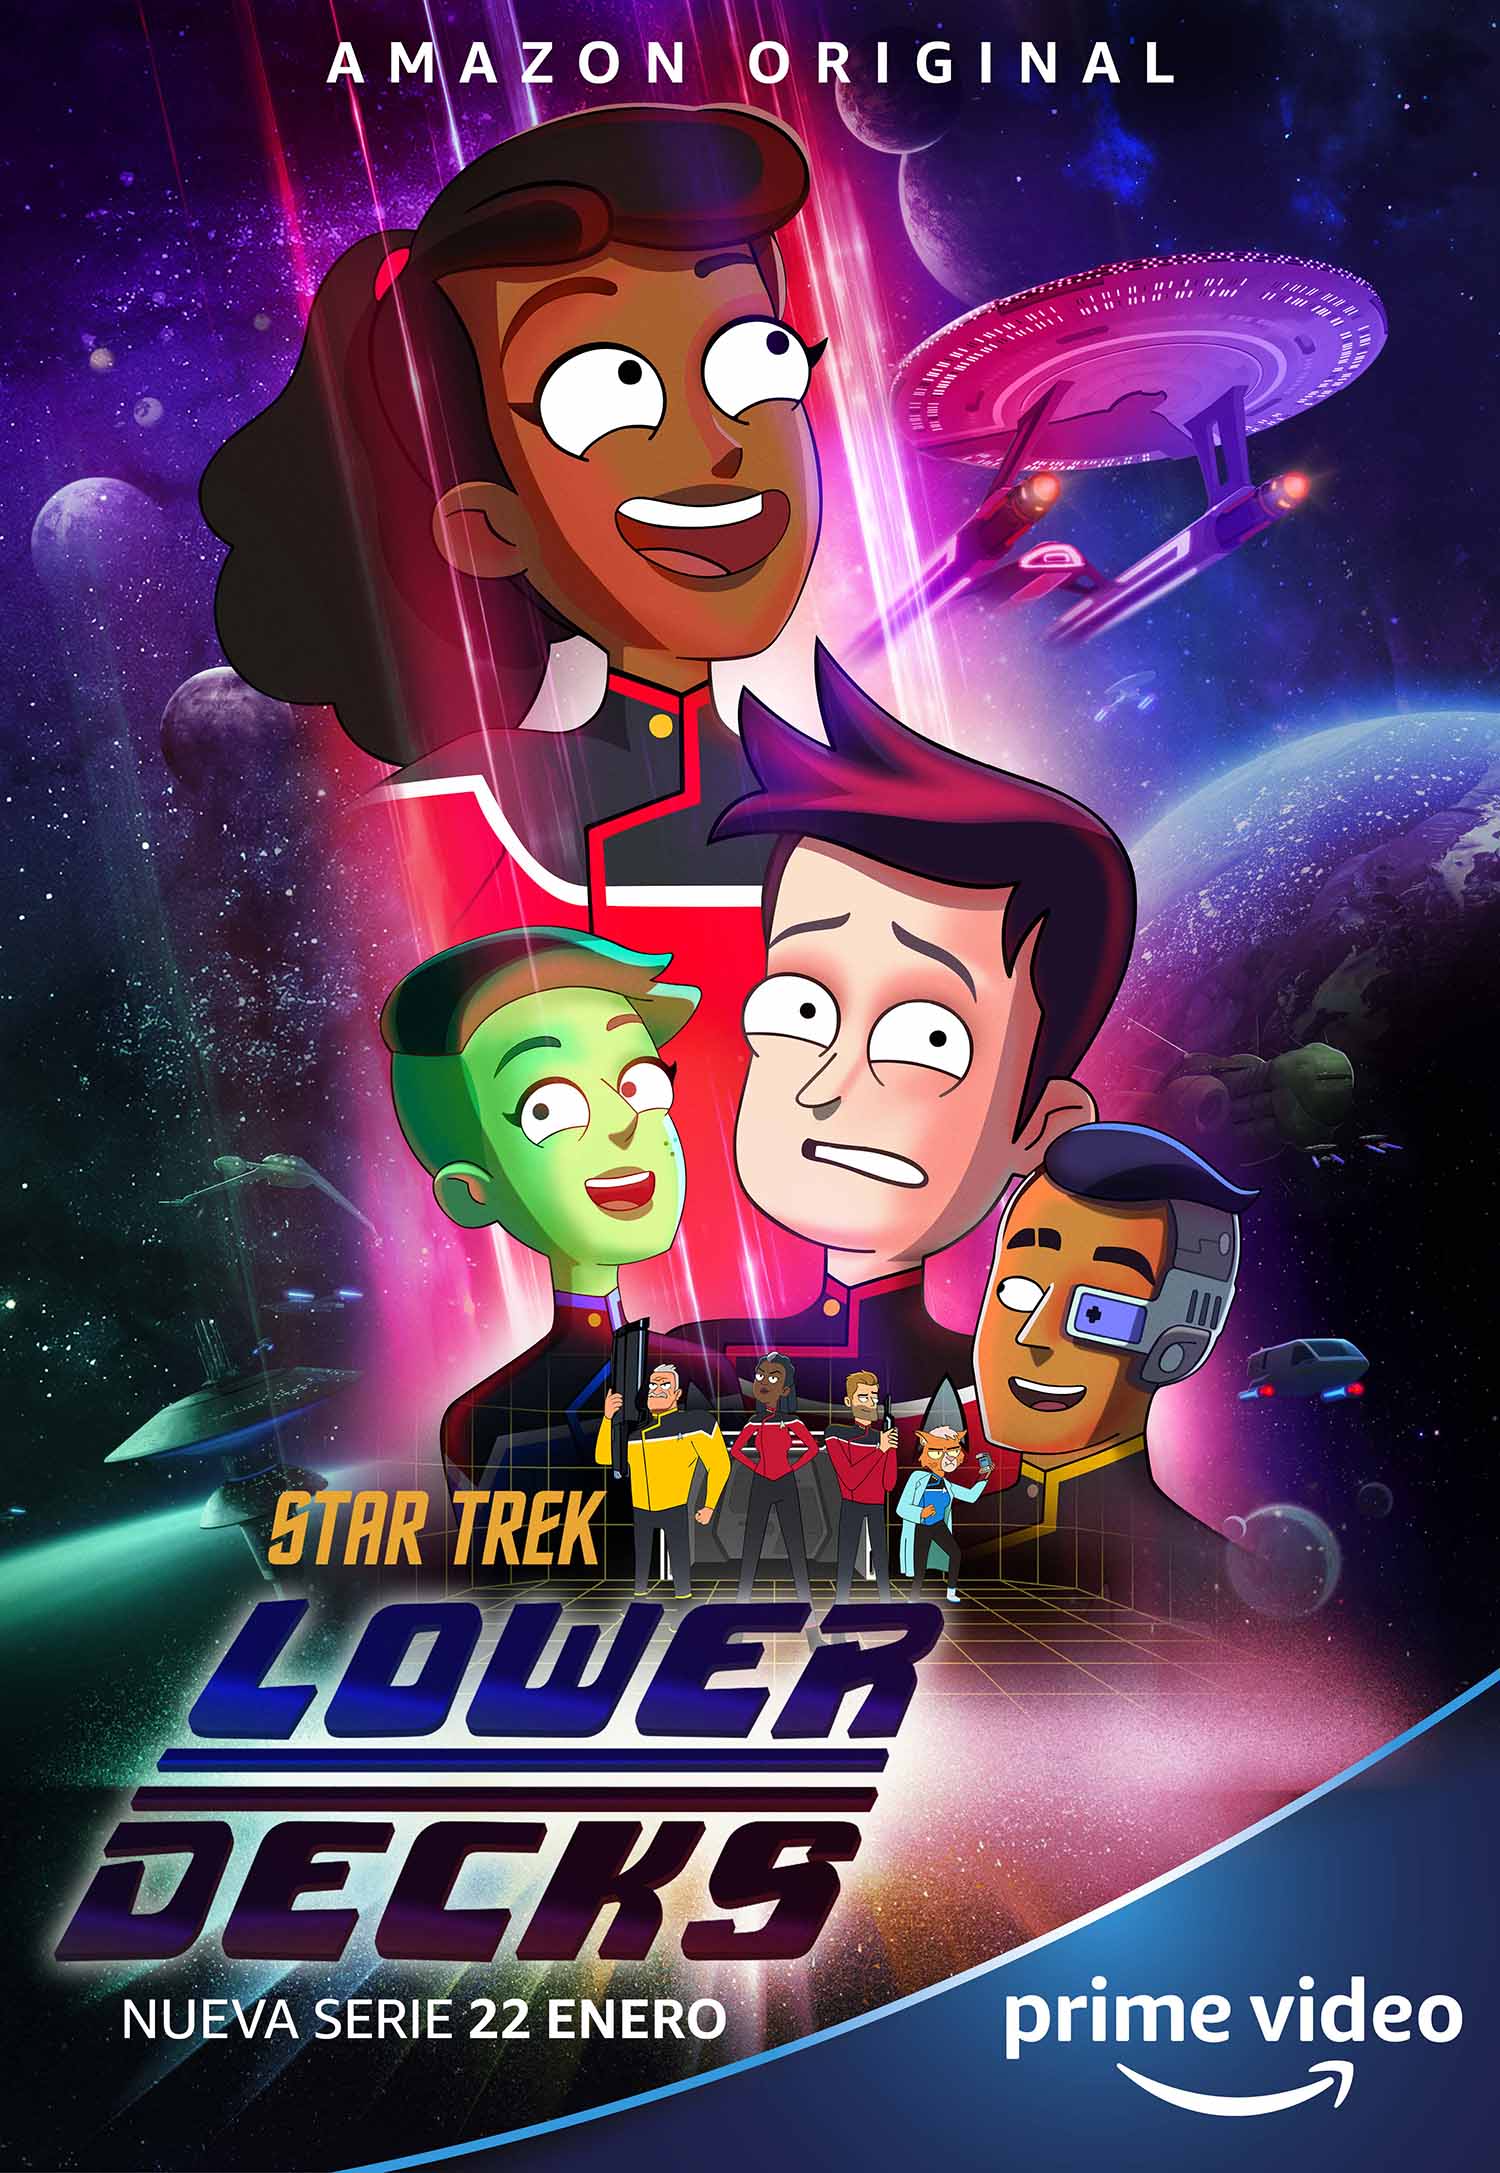 ‘Star Trek: Lower Decks’ serie creada por uno de los guionistas de ‘Rick y Morty’